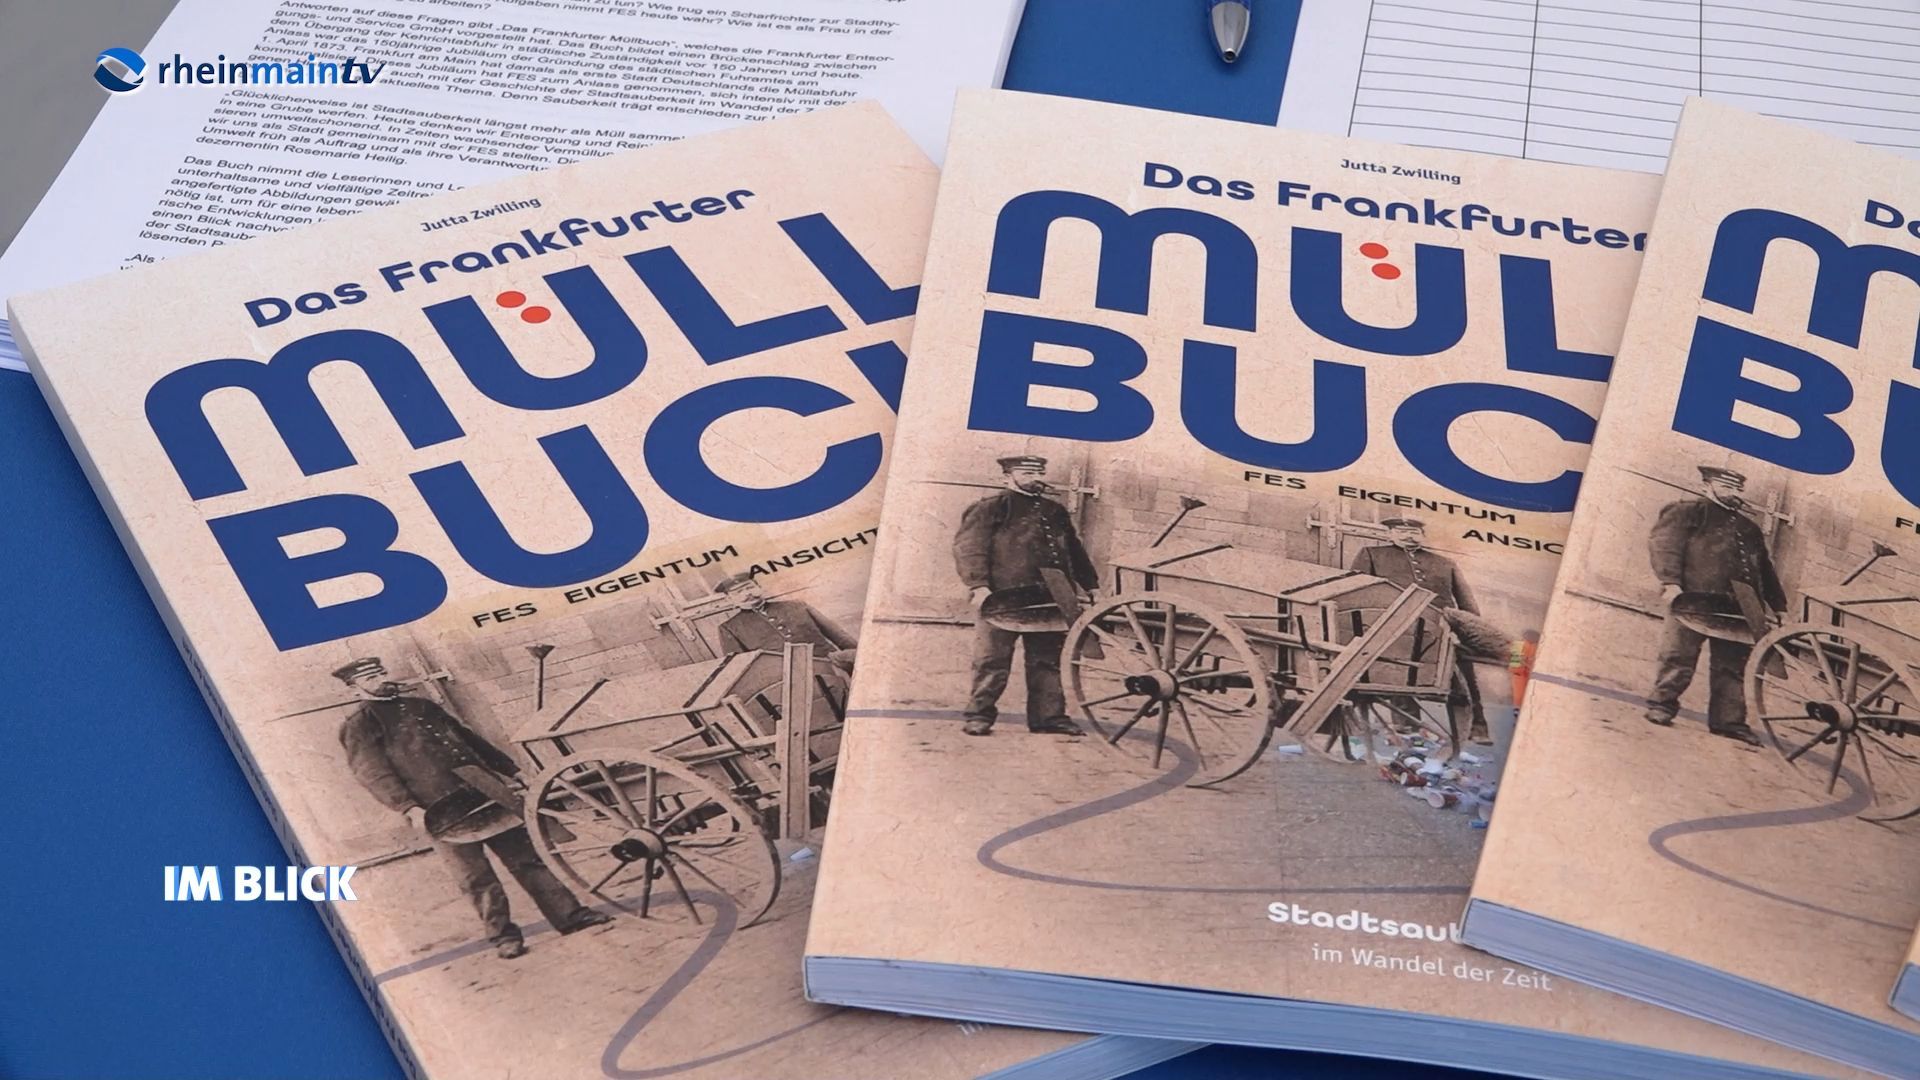 FES bringt Buch zur Stadtsauberkeit in Frankfurt raus